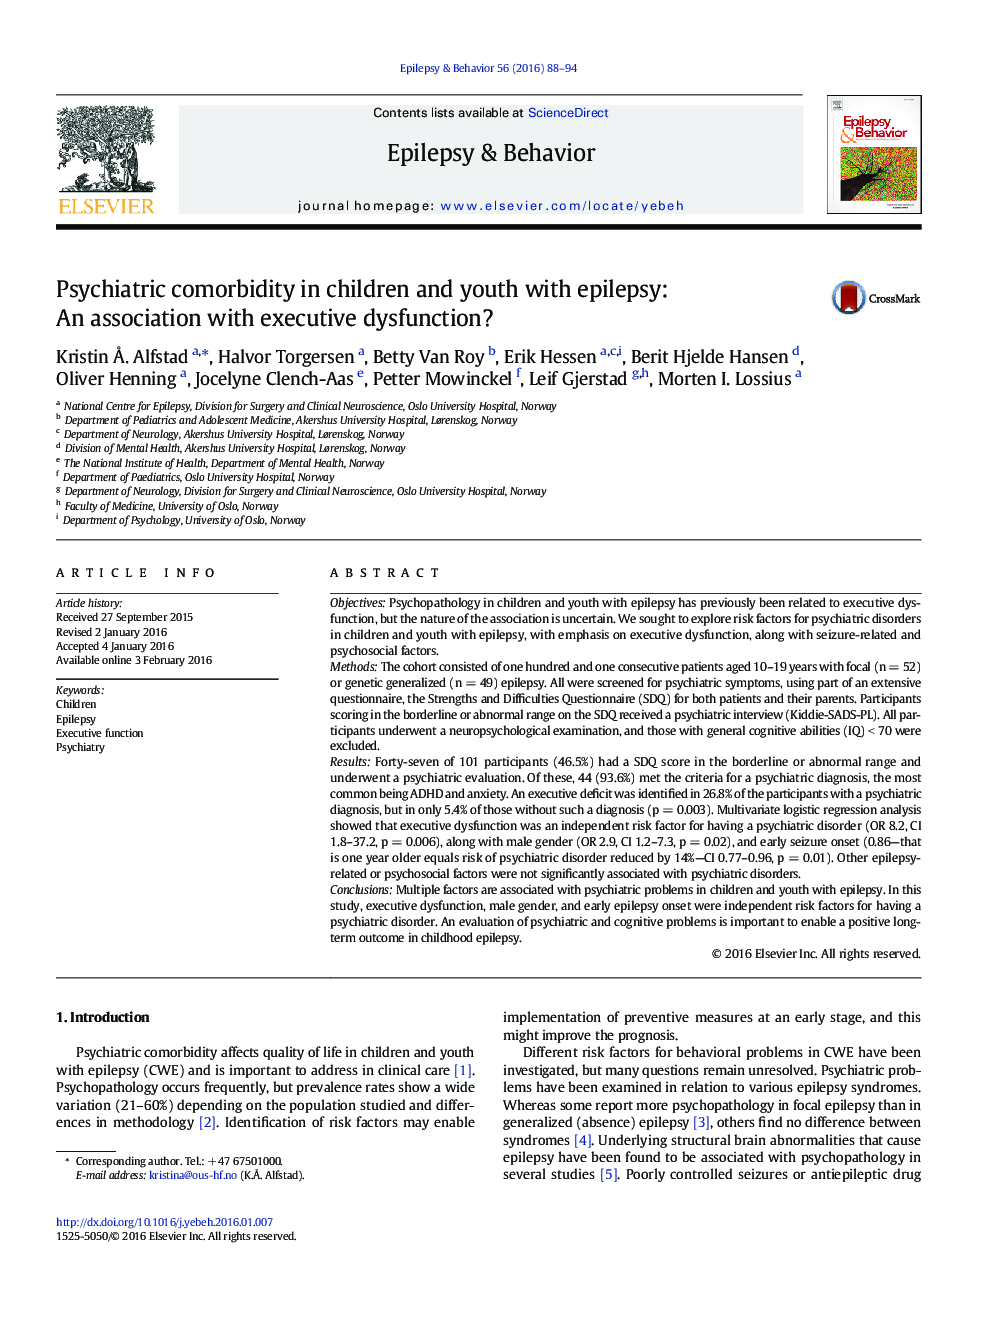 همراهی روانپزشکی در کودکان و جوانان مبتلا به صرع: ارتباط با اختلال عملکرد اجرایی؟ 